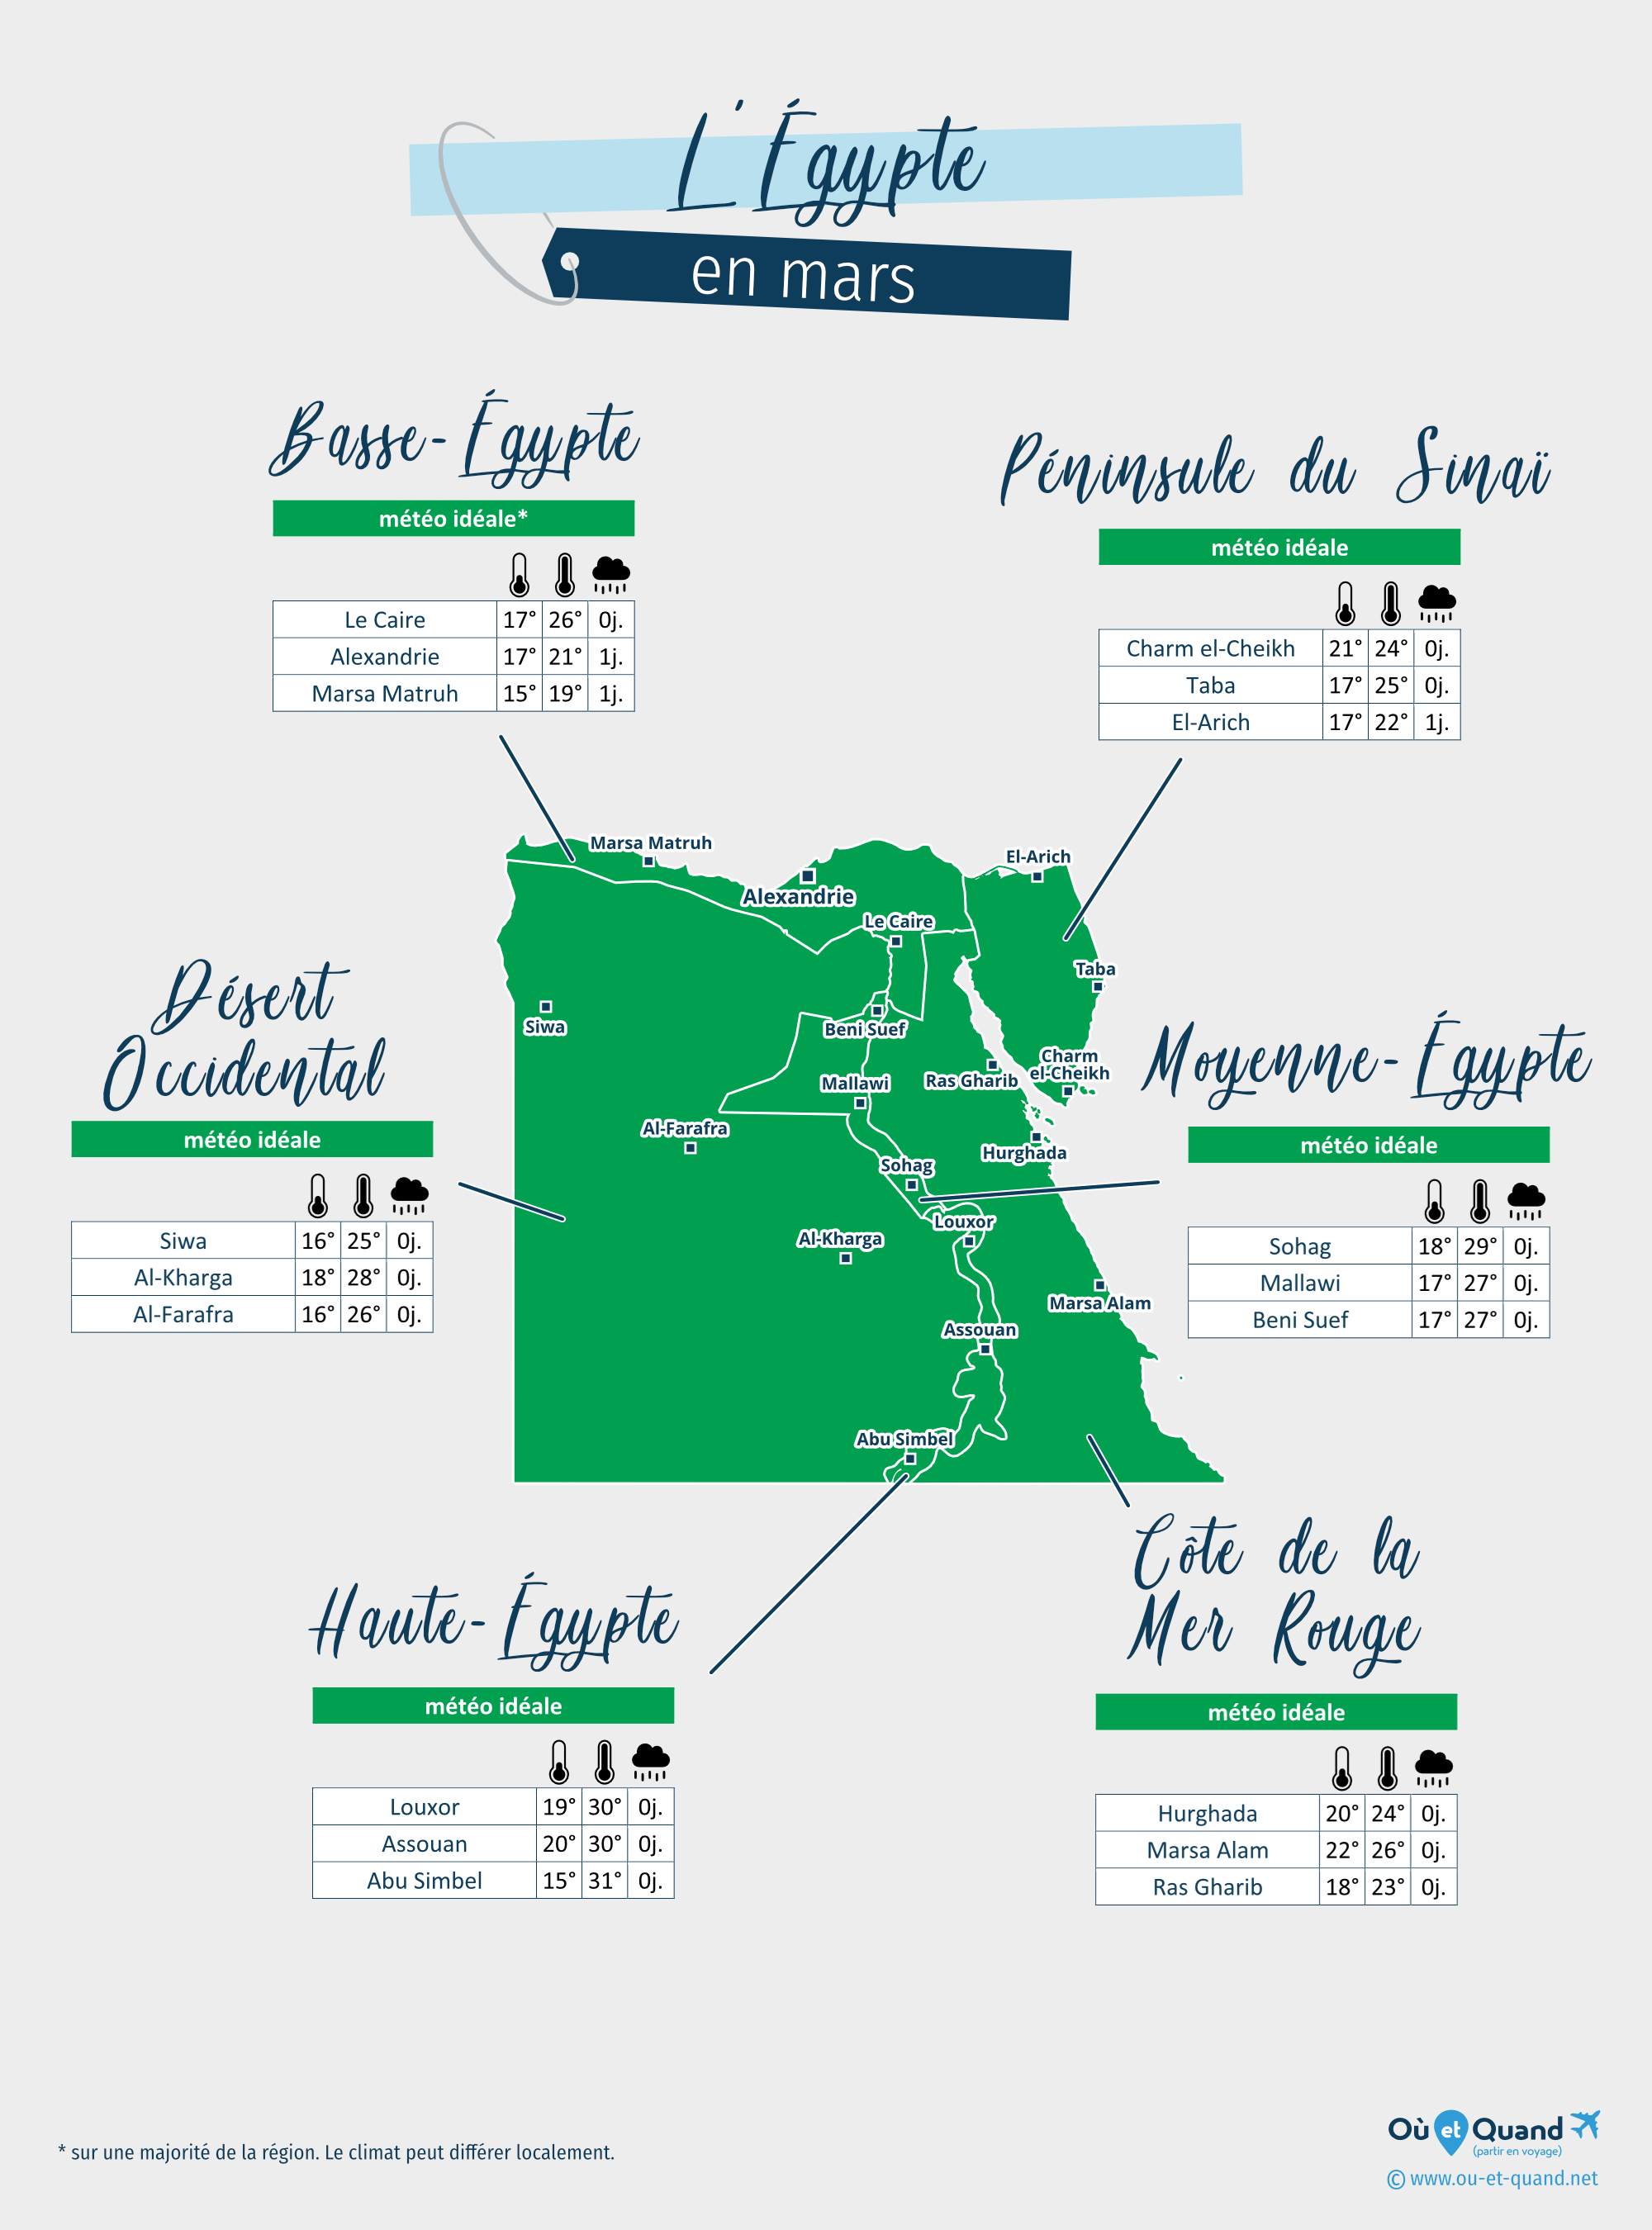 Carte de la météo en mars dans les régions de l'Égypte